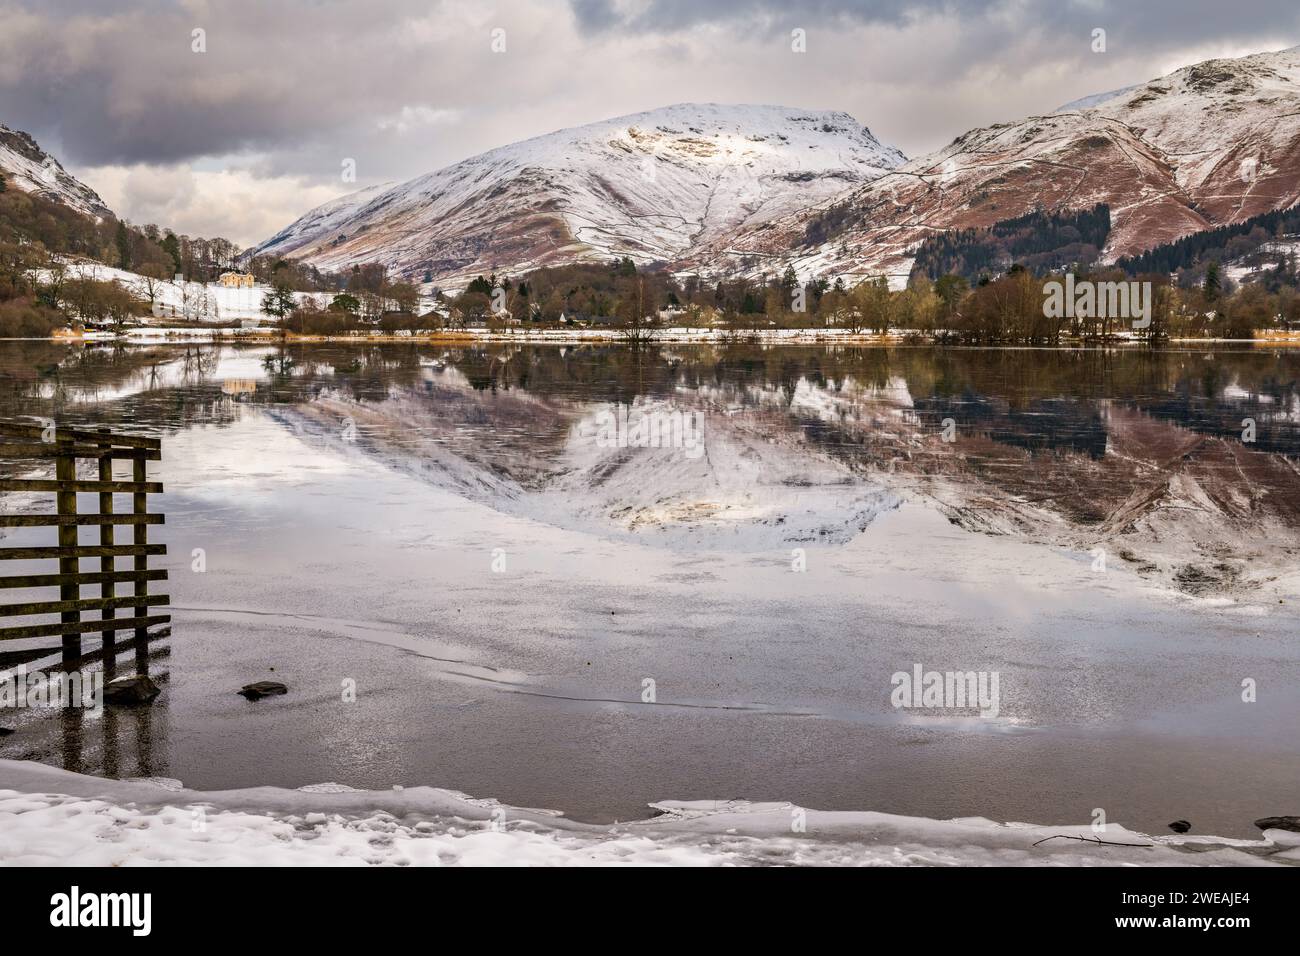 Der Grasmere Lake im Lake District Cumbria UK spiegelt sich vor einem Hintergrund aus schneebedeckten Bergen und eisblauem Wasser wider Stockfoto